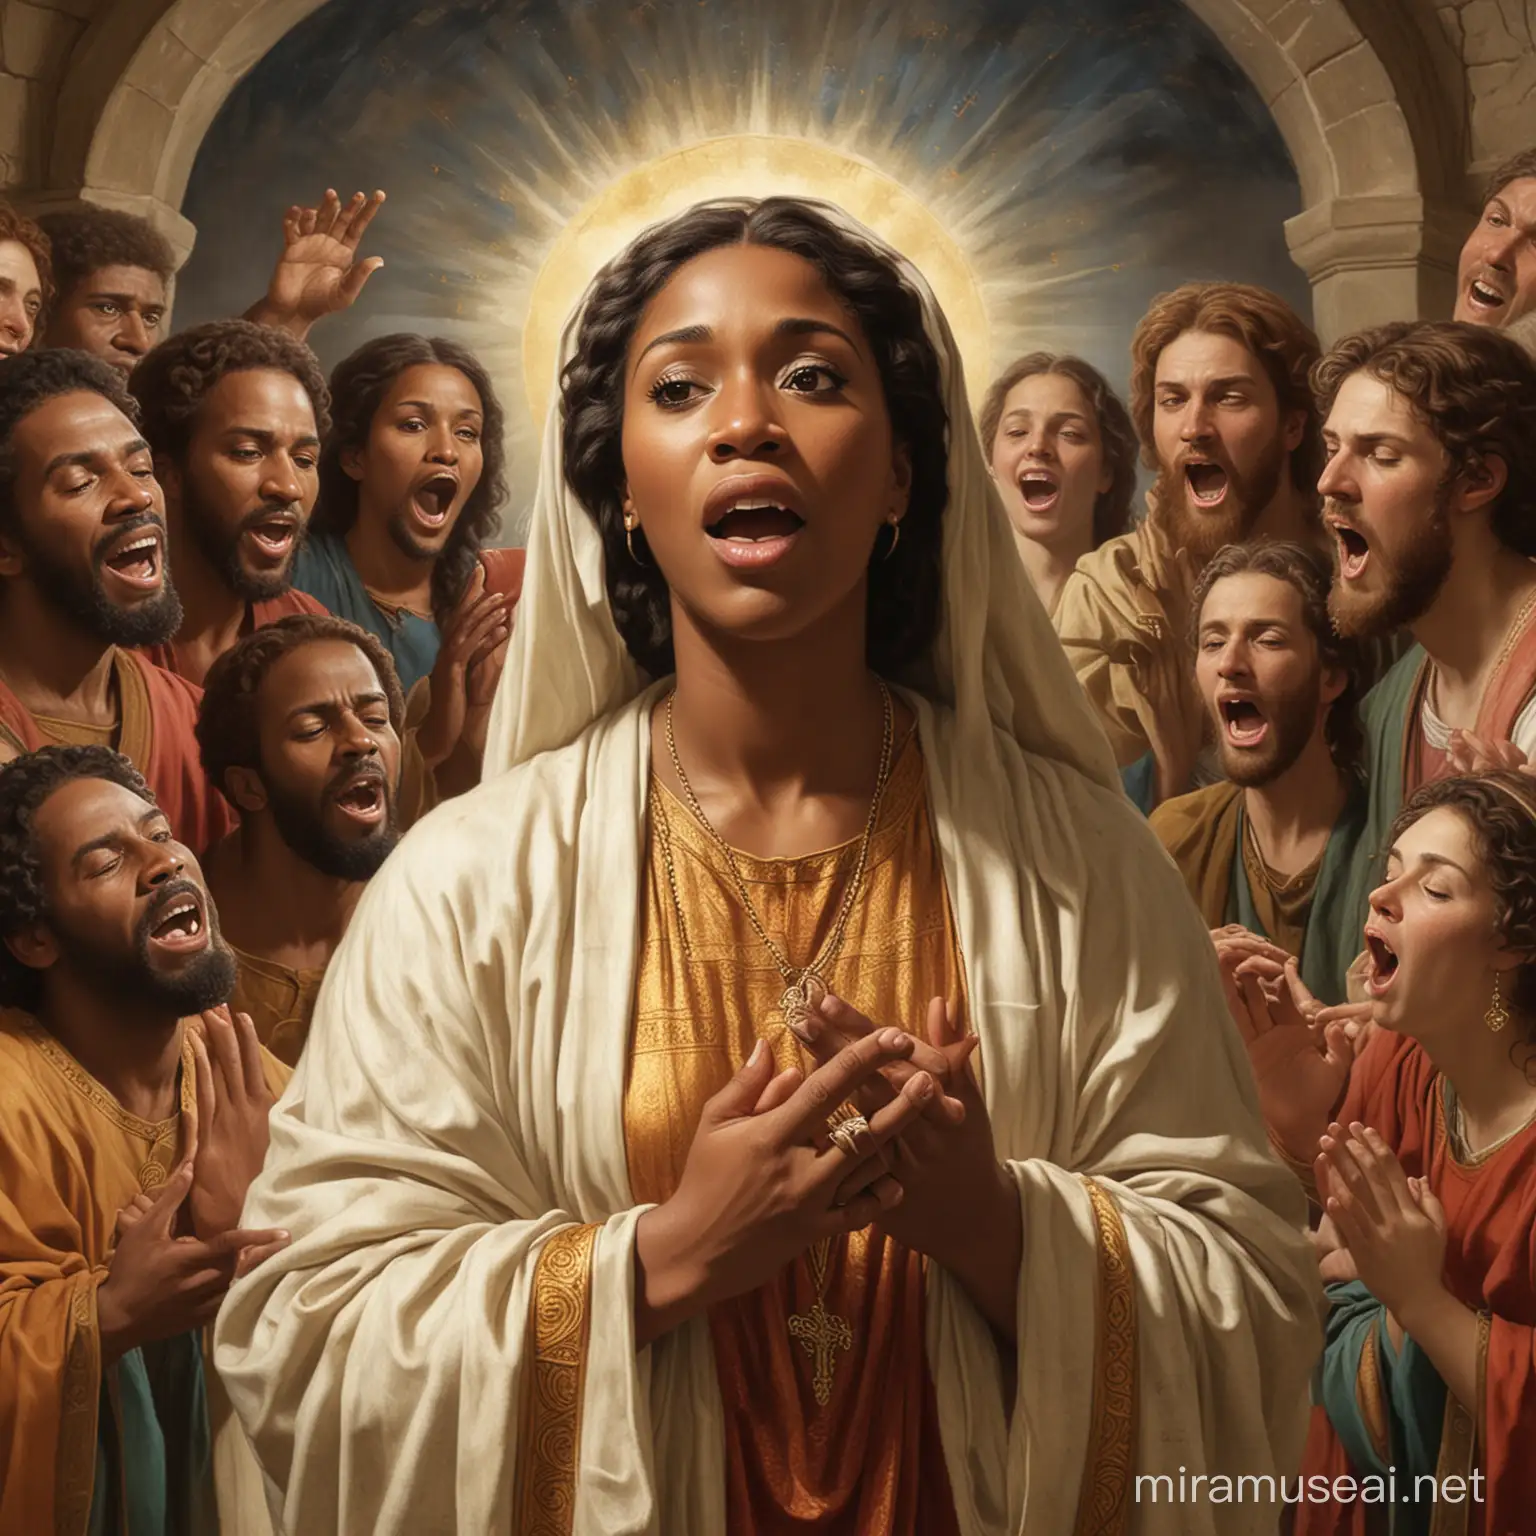 Gospel Singers in Biblical Art